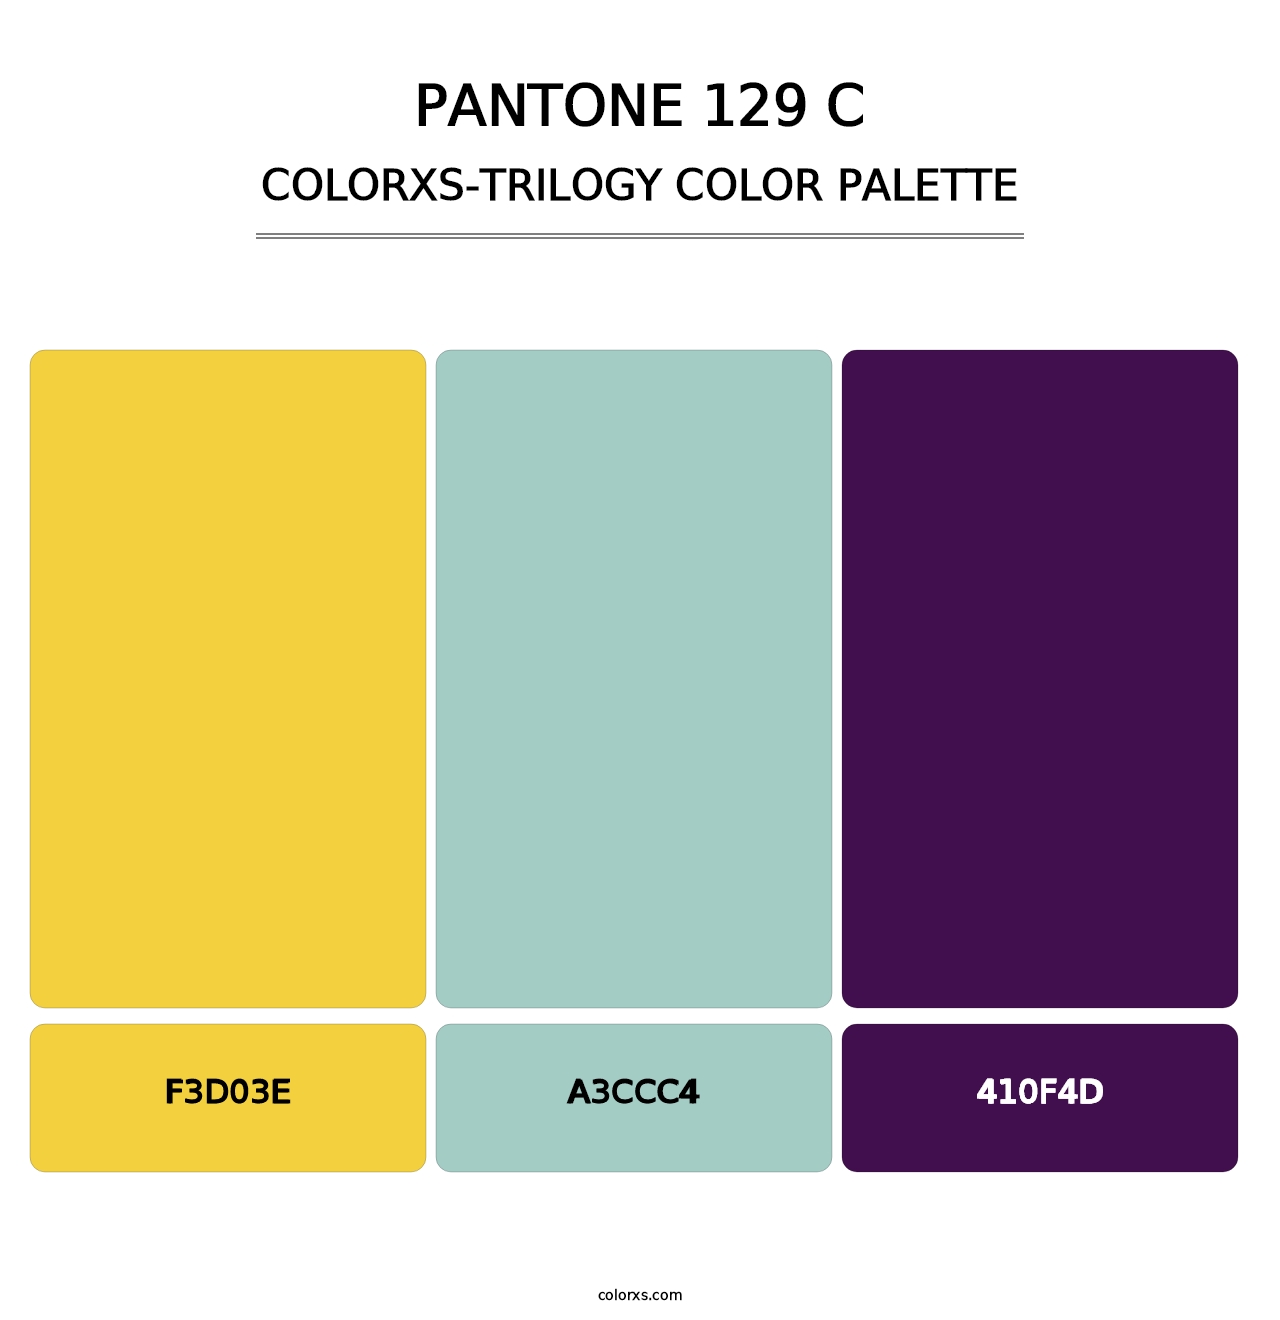 PANTONE 129 C - Colorxs Trilogy Palette